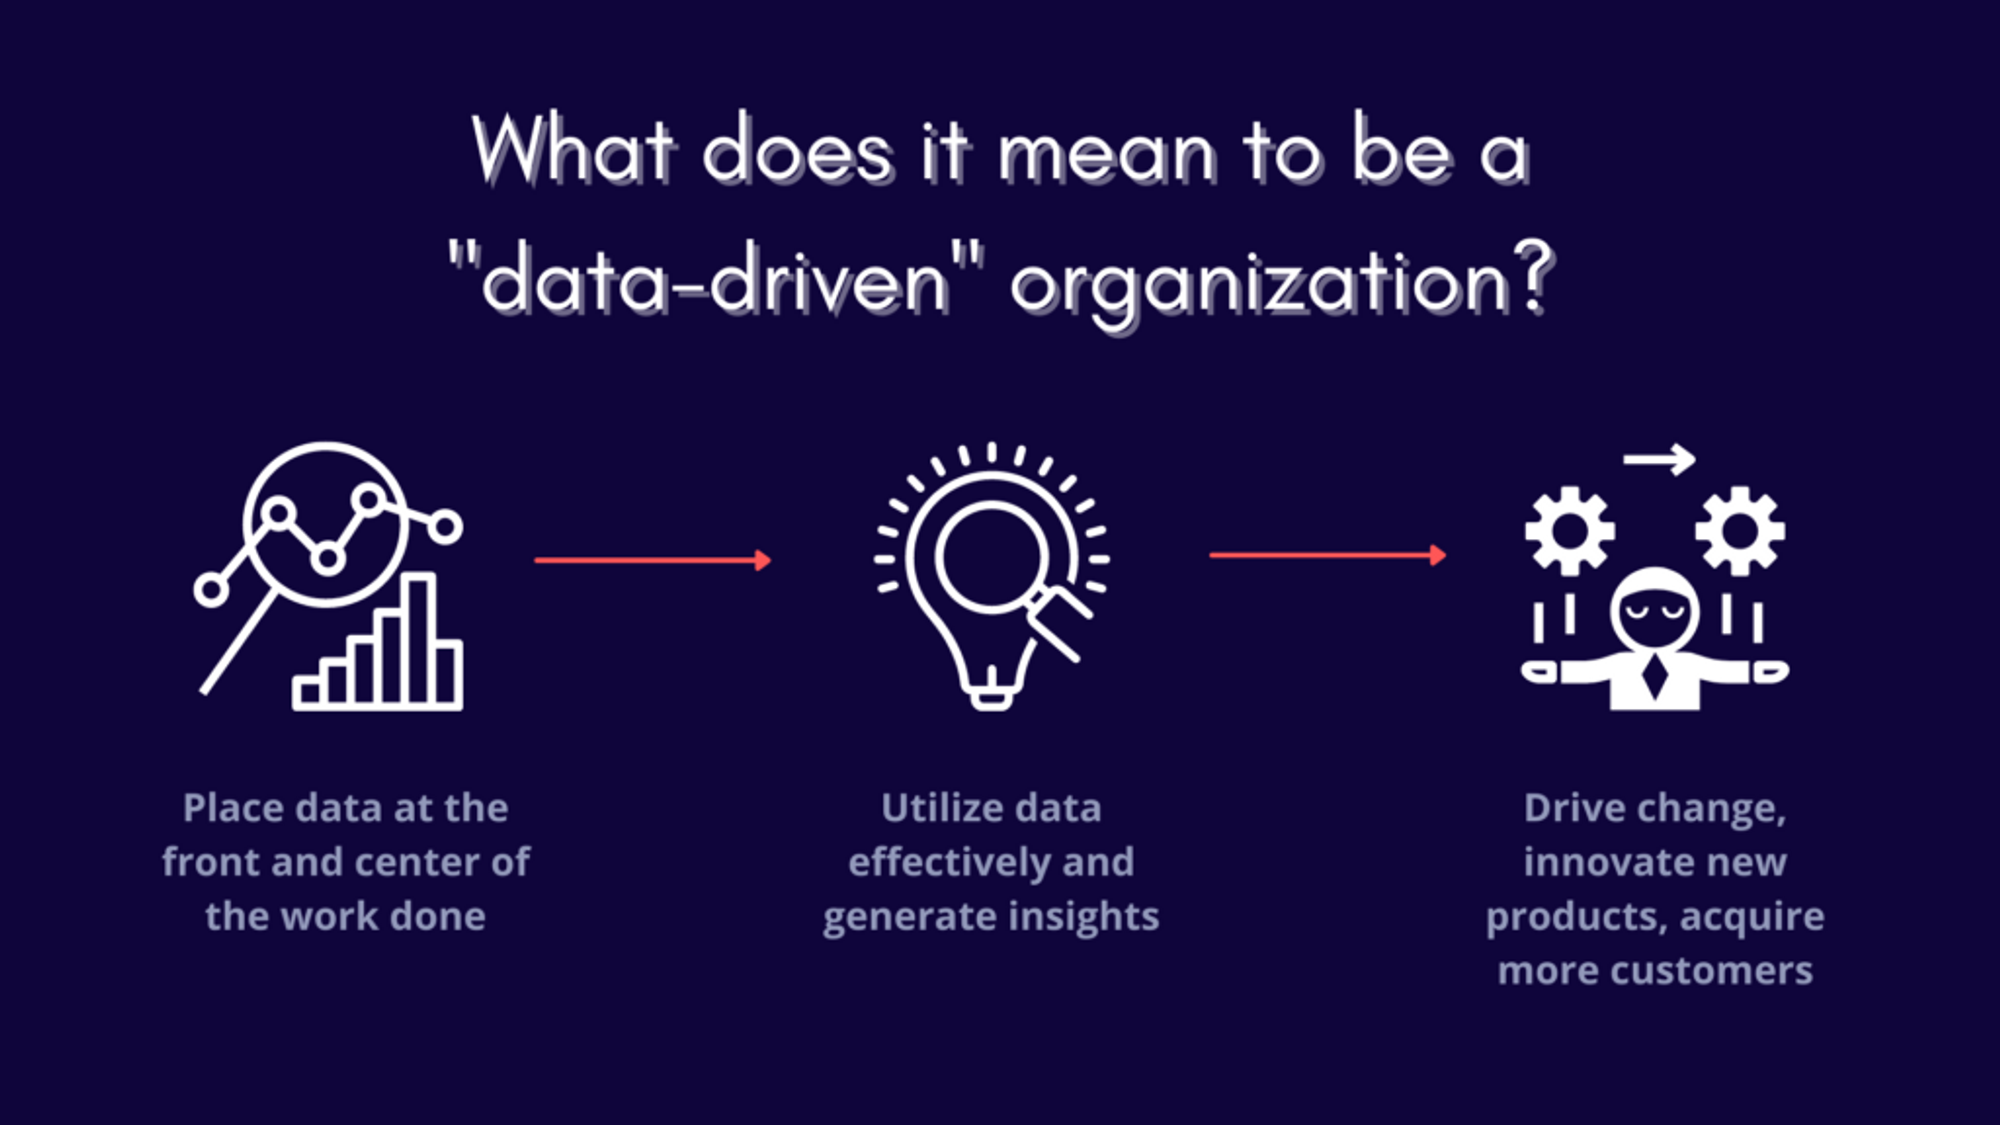 Data-drive organization